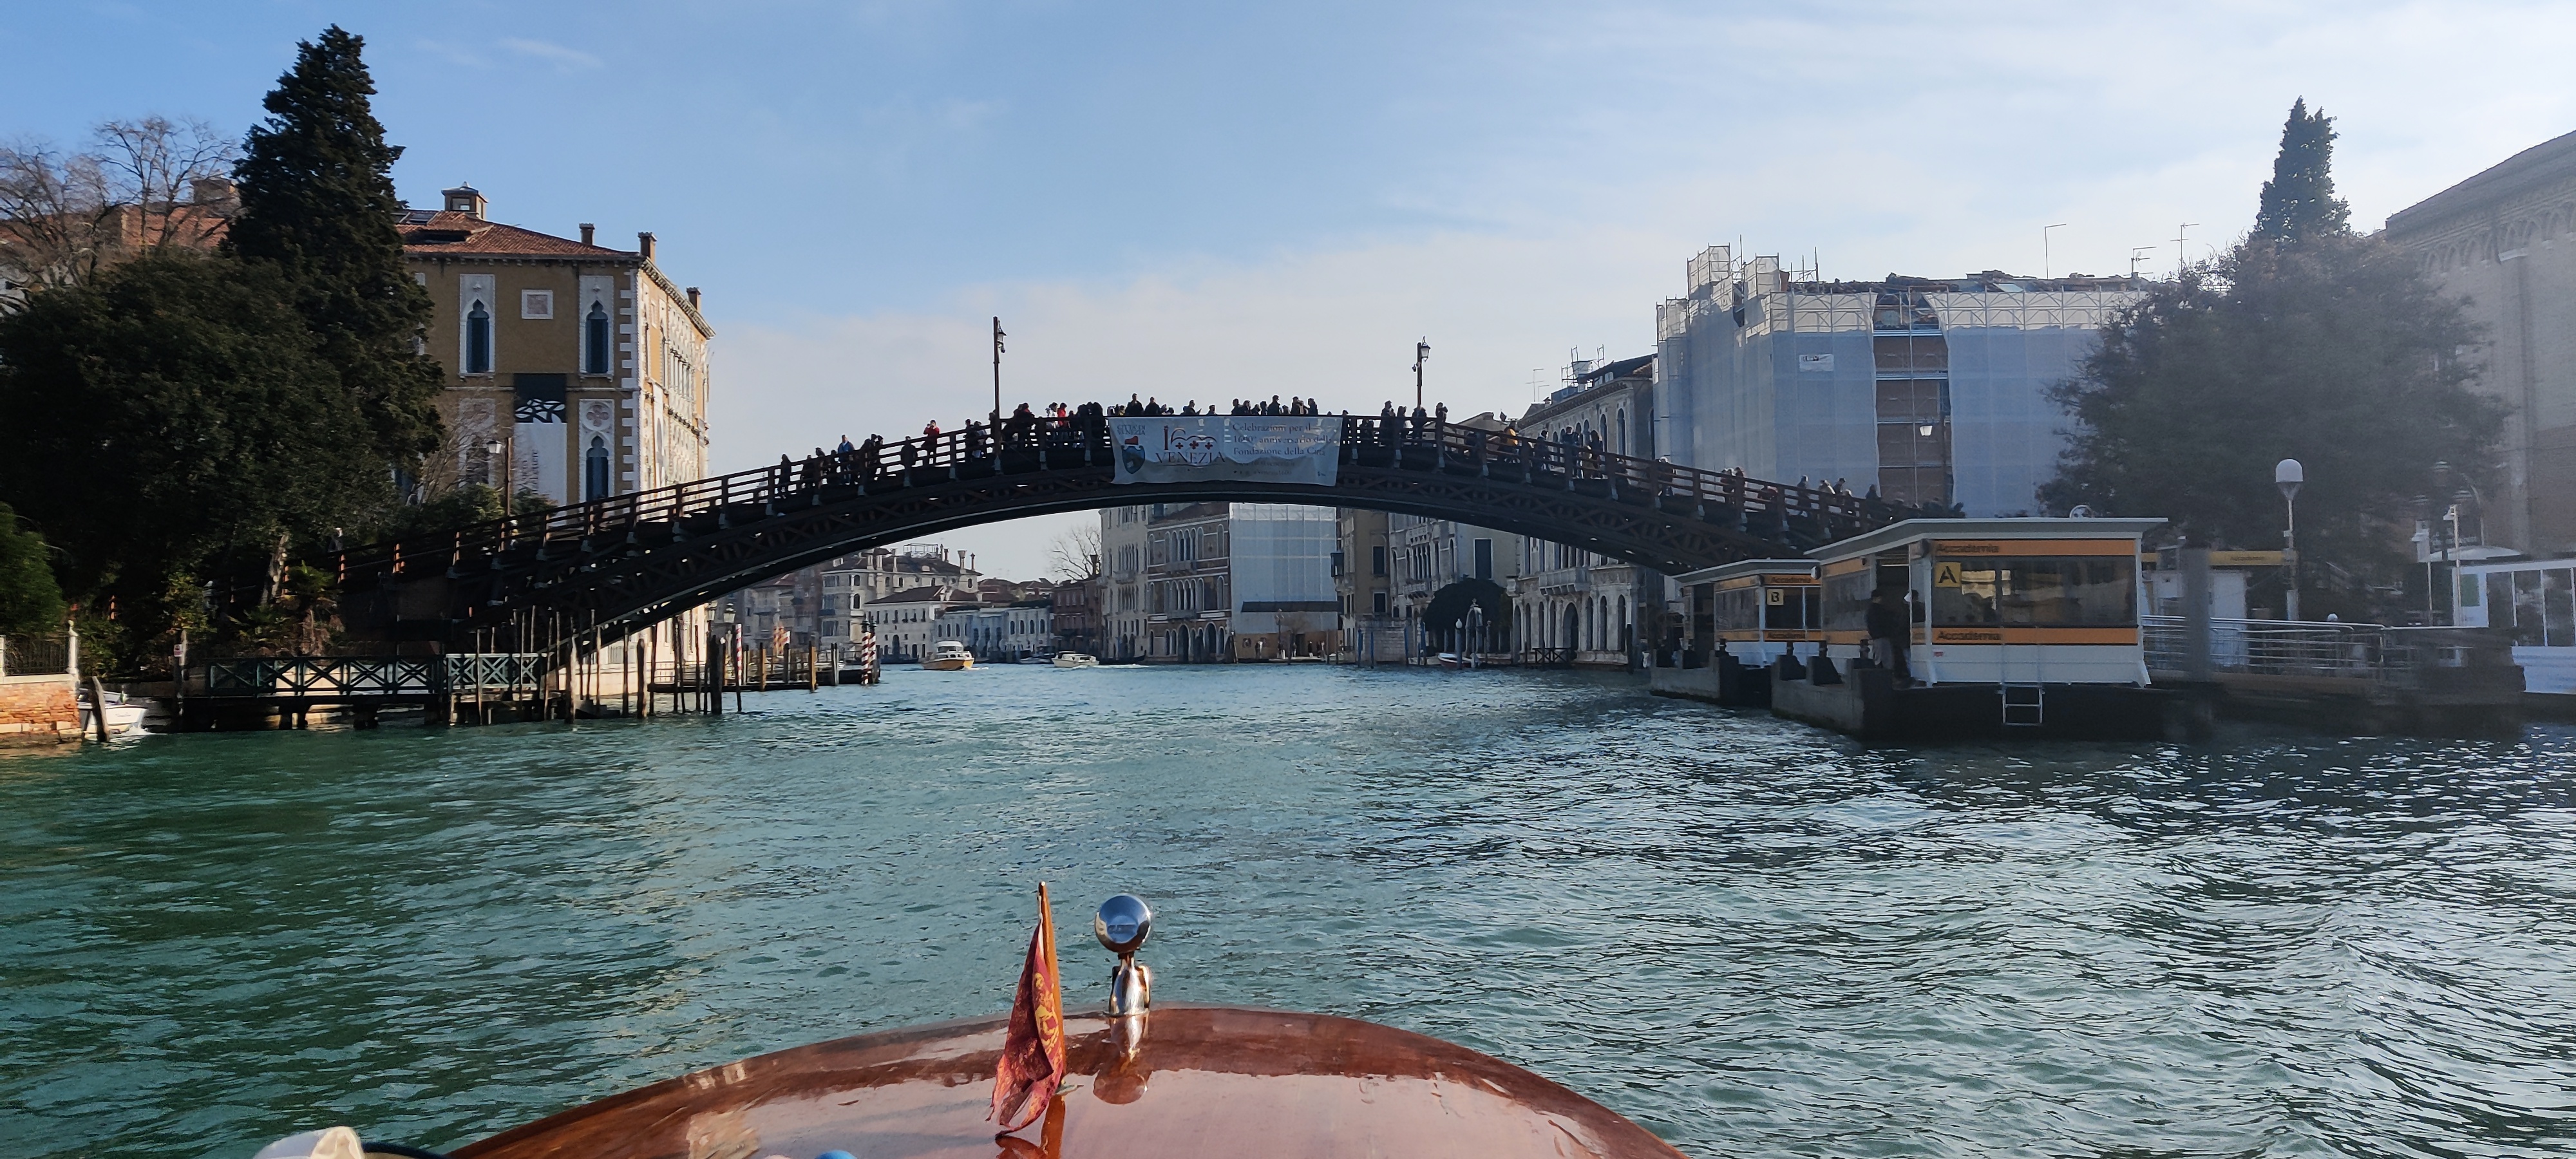 Puente de la Accademia en Venecia - Venecia en 3 días